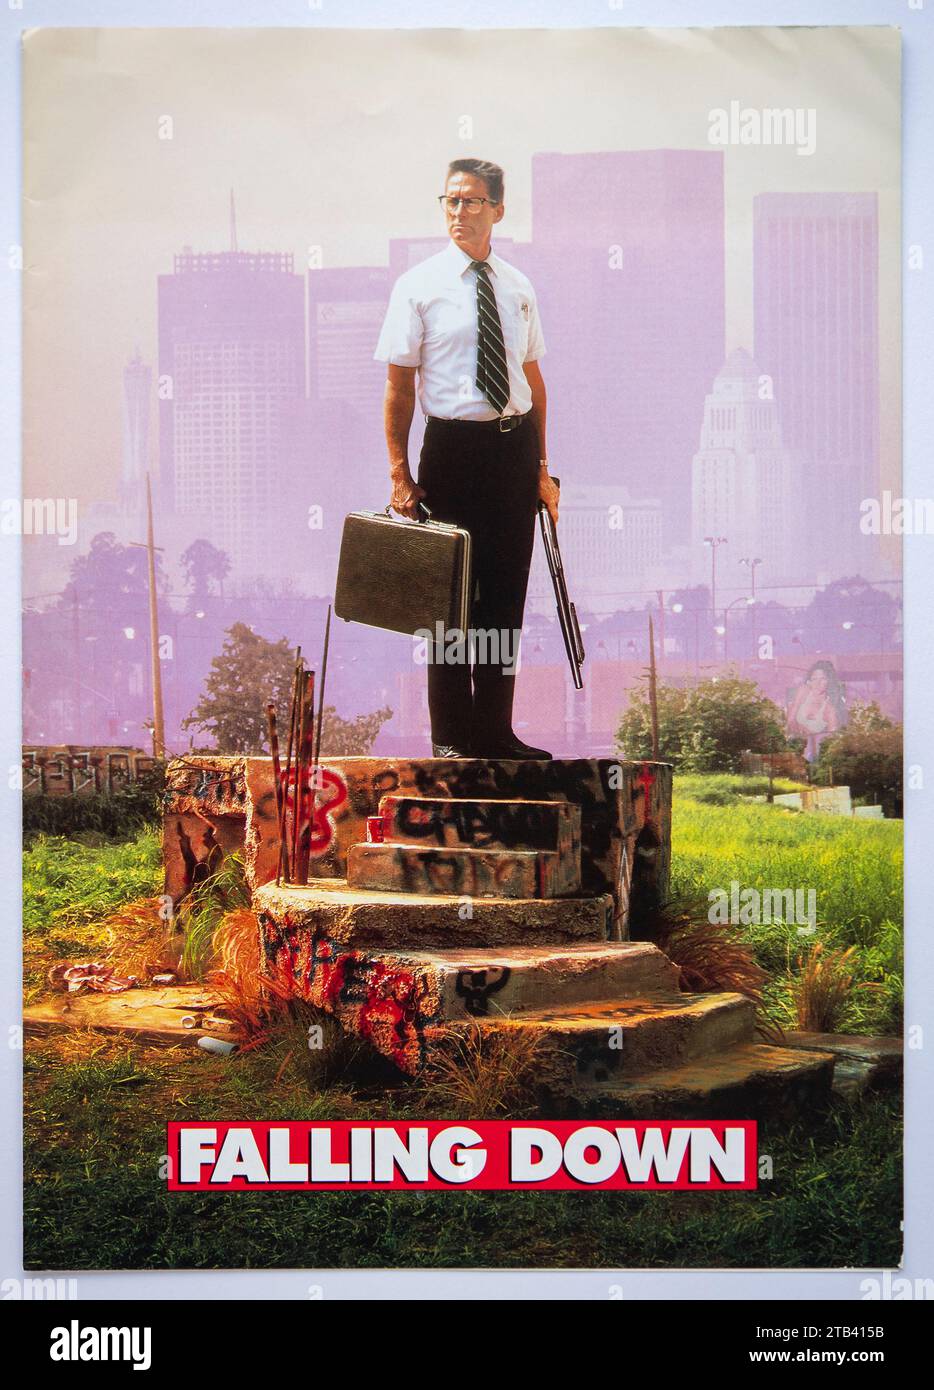 Couverture d'informations publicitaires pour le film Falling Down, un thriller psychologique avec Michael Douglas, qui est sorti en 1993 Banque D'Images